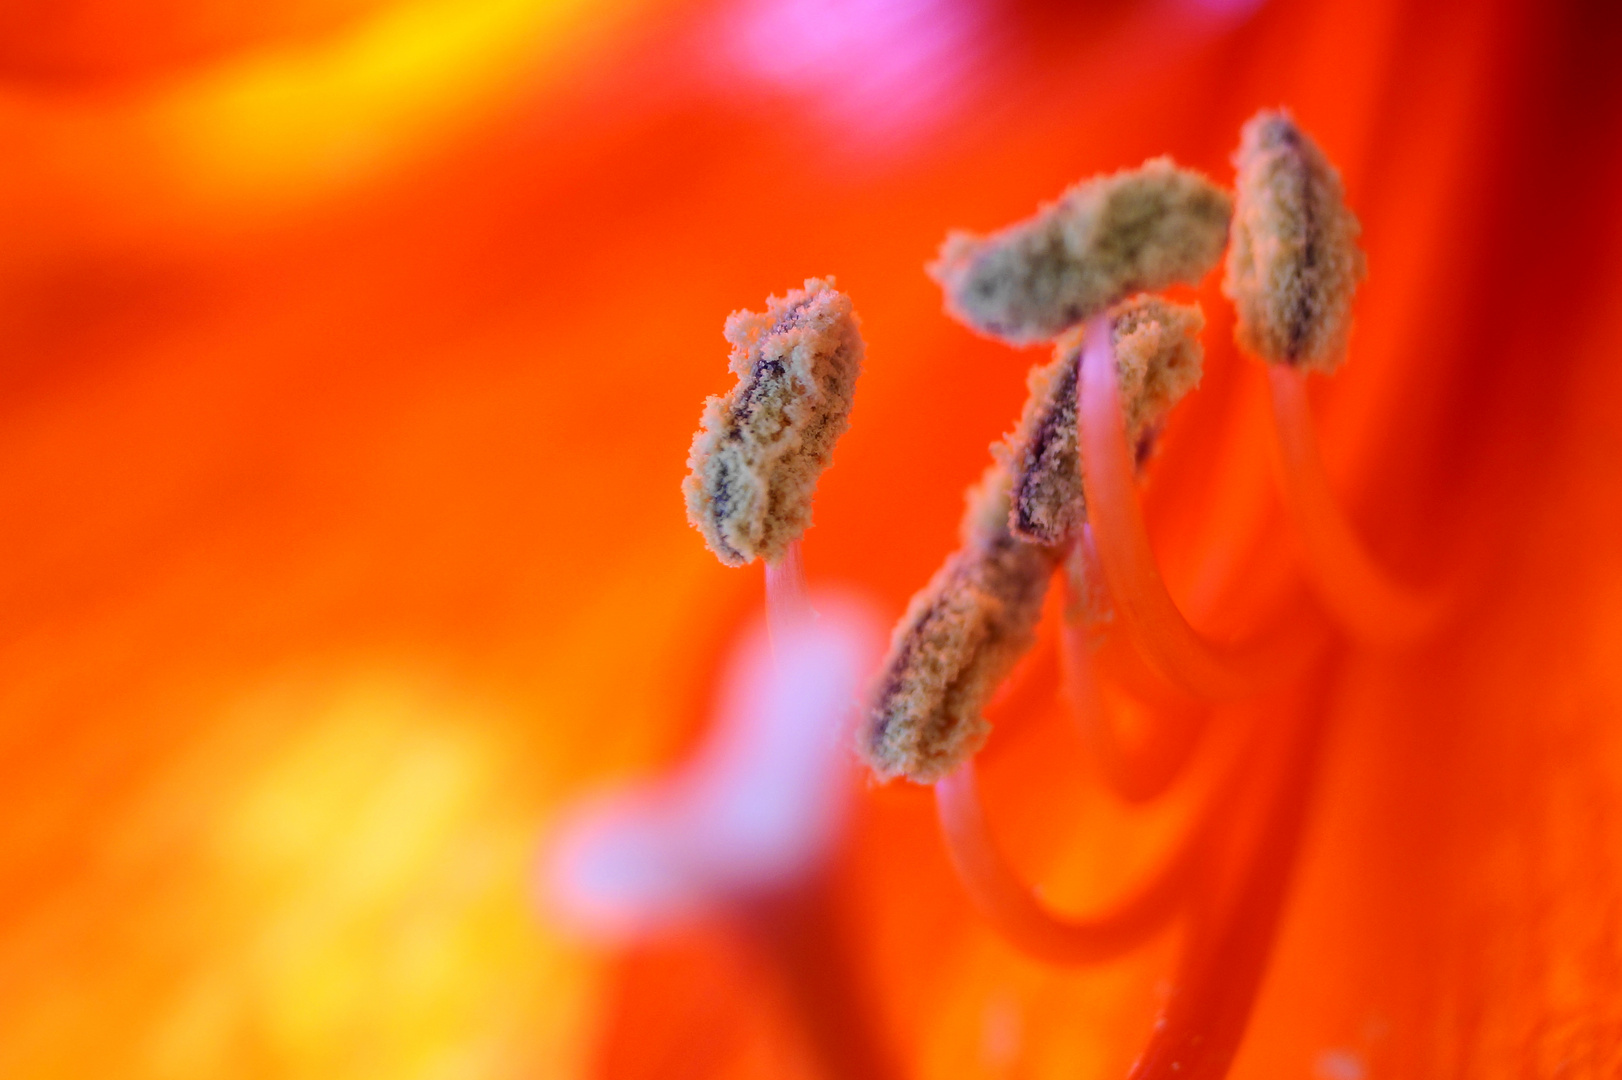 Amaryllisblüte - mal ganz nah und anders